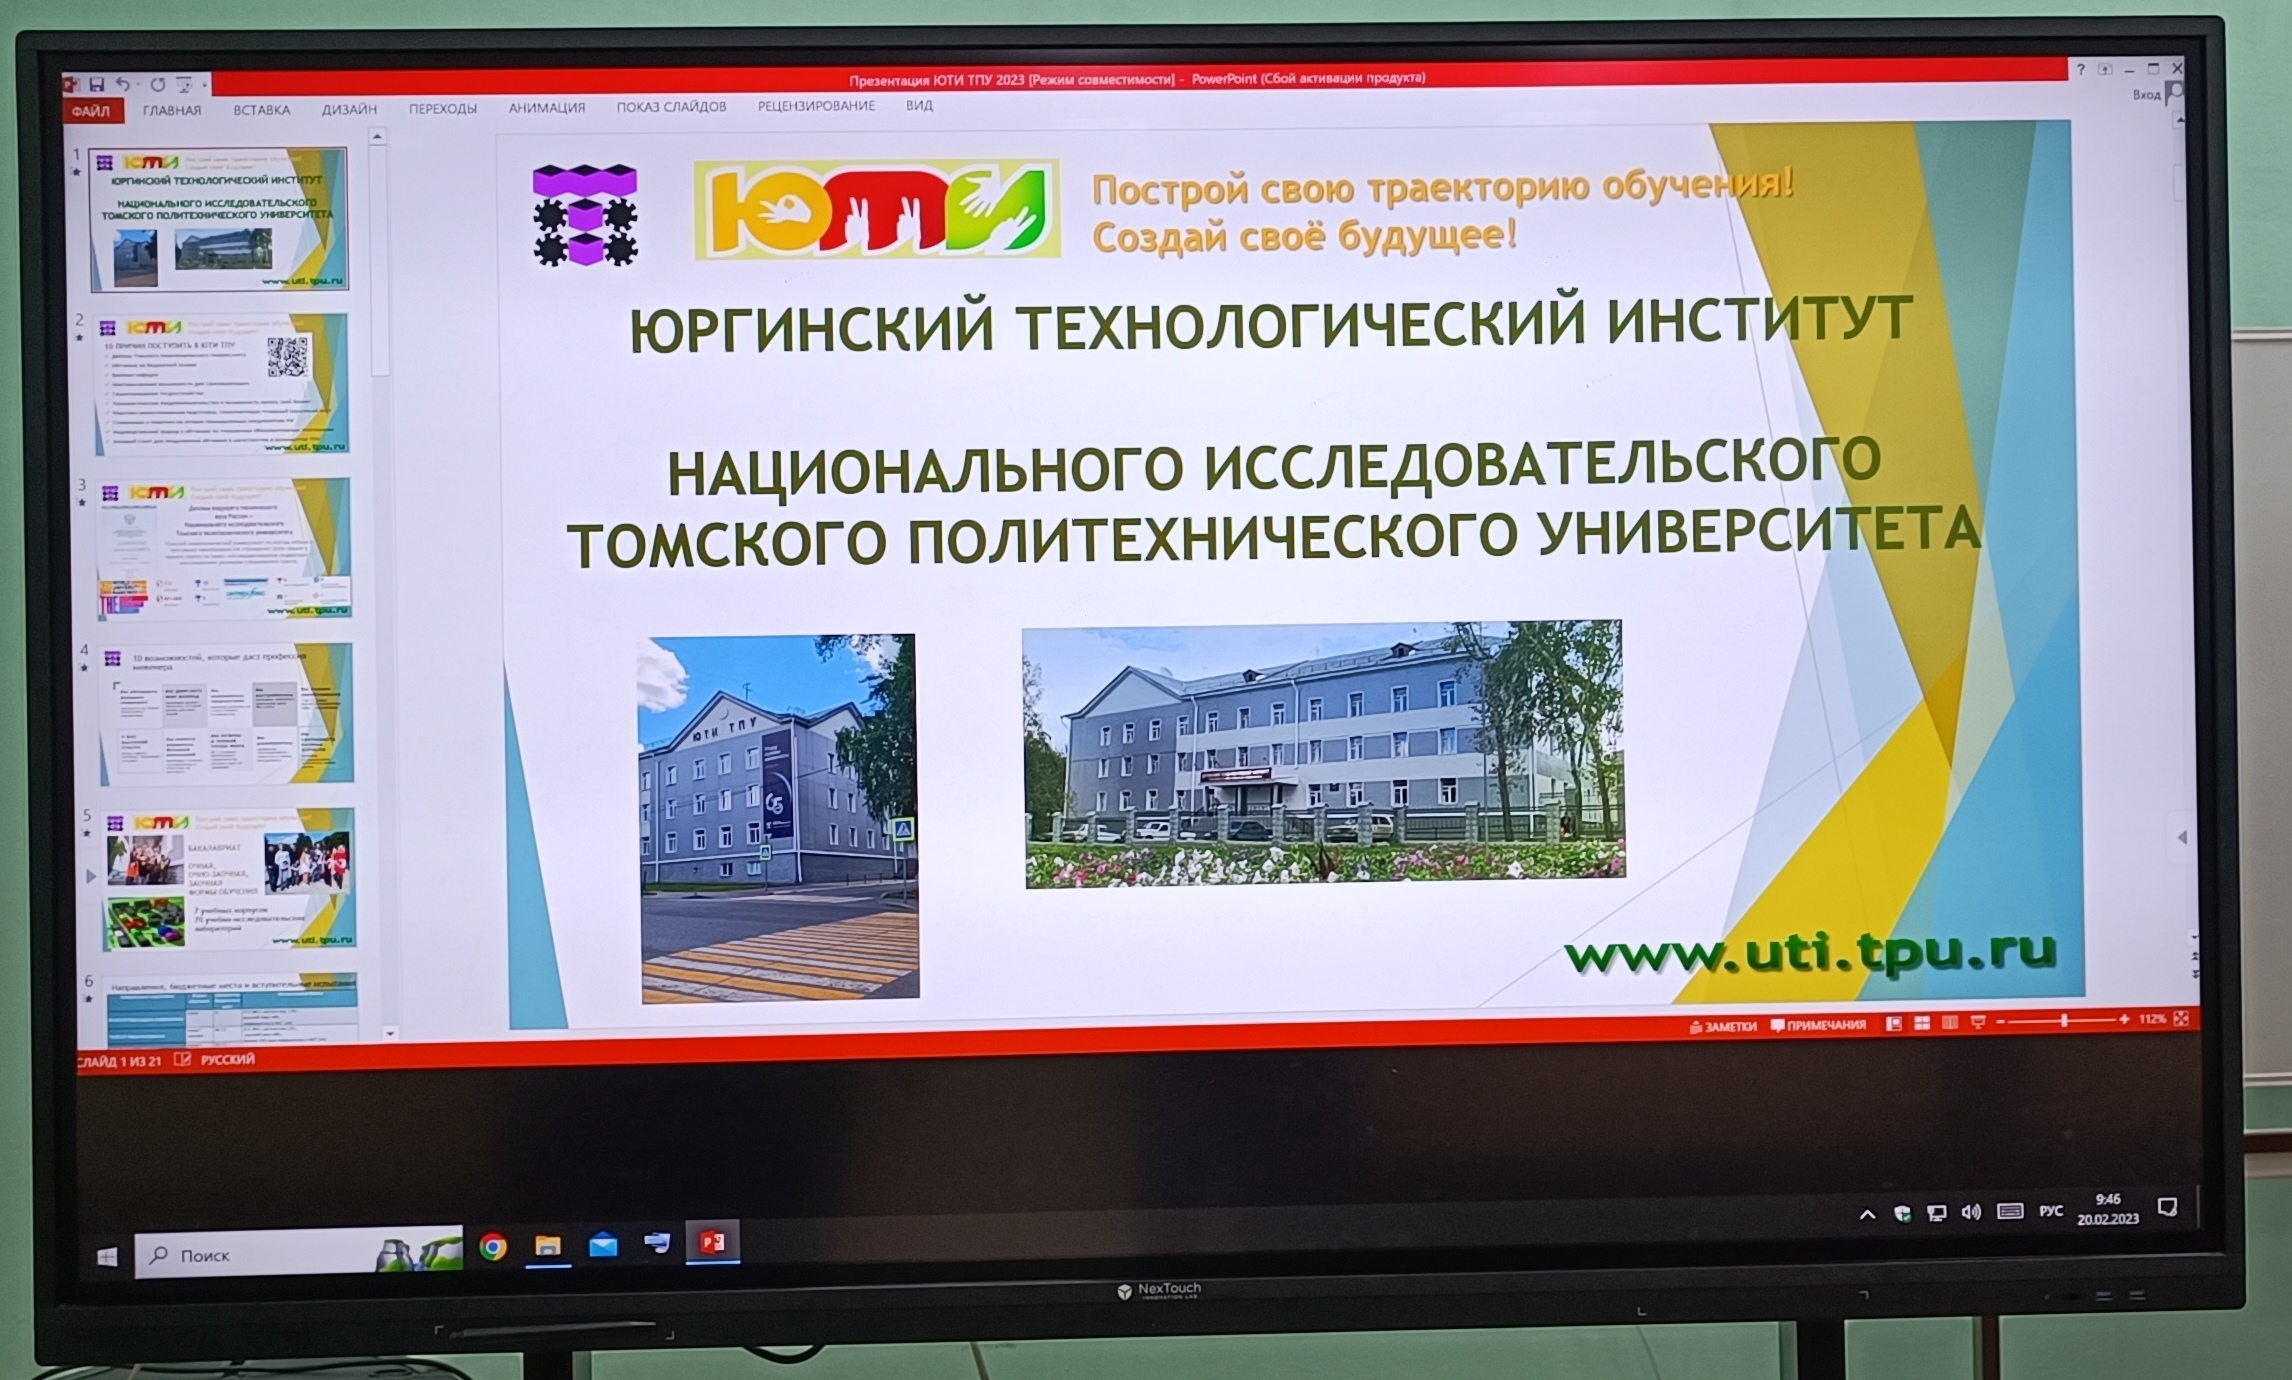 Вы сейчас просматриваете ЮТИ института национального исследования Томского политехнического университета